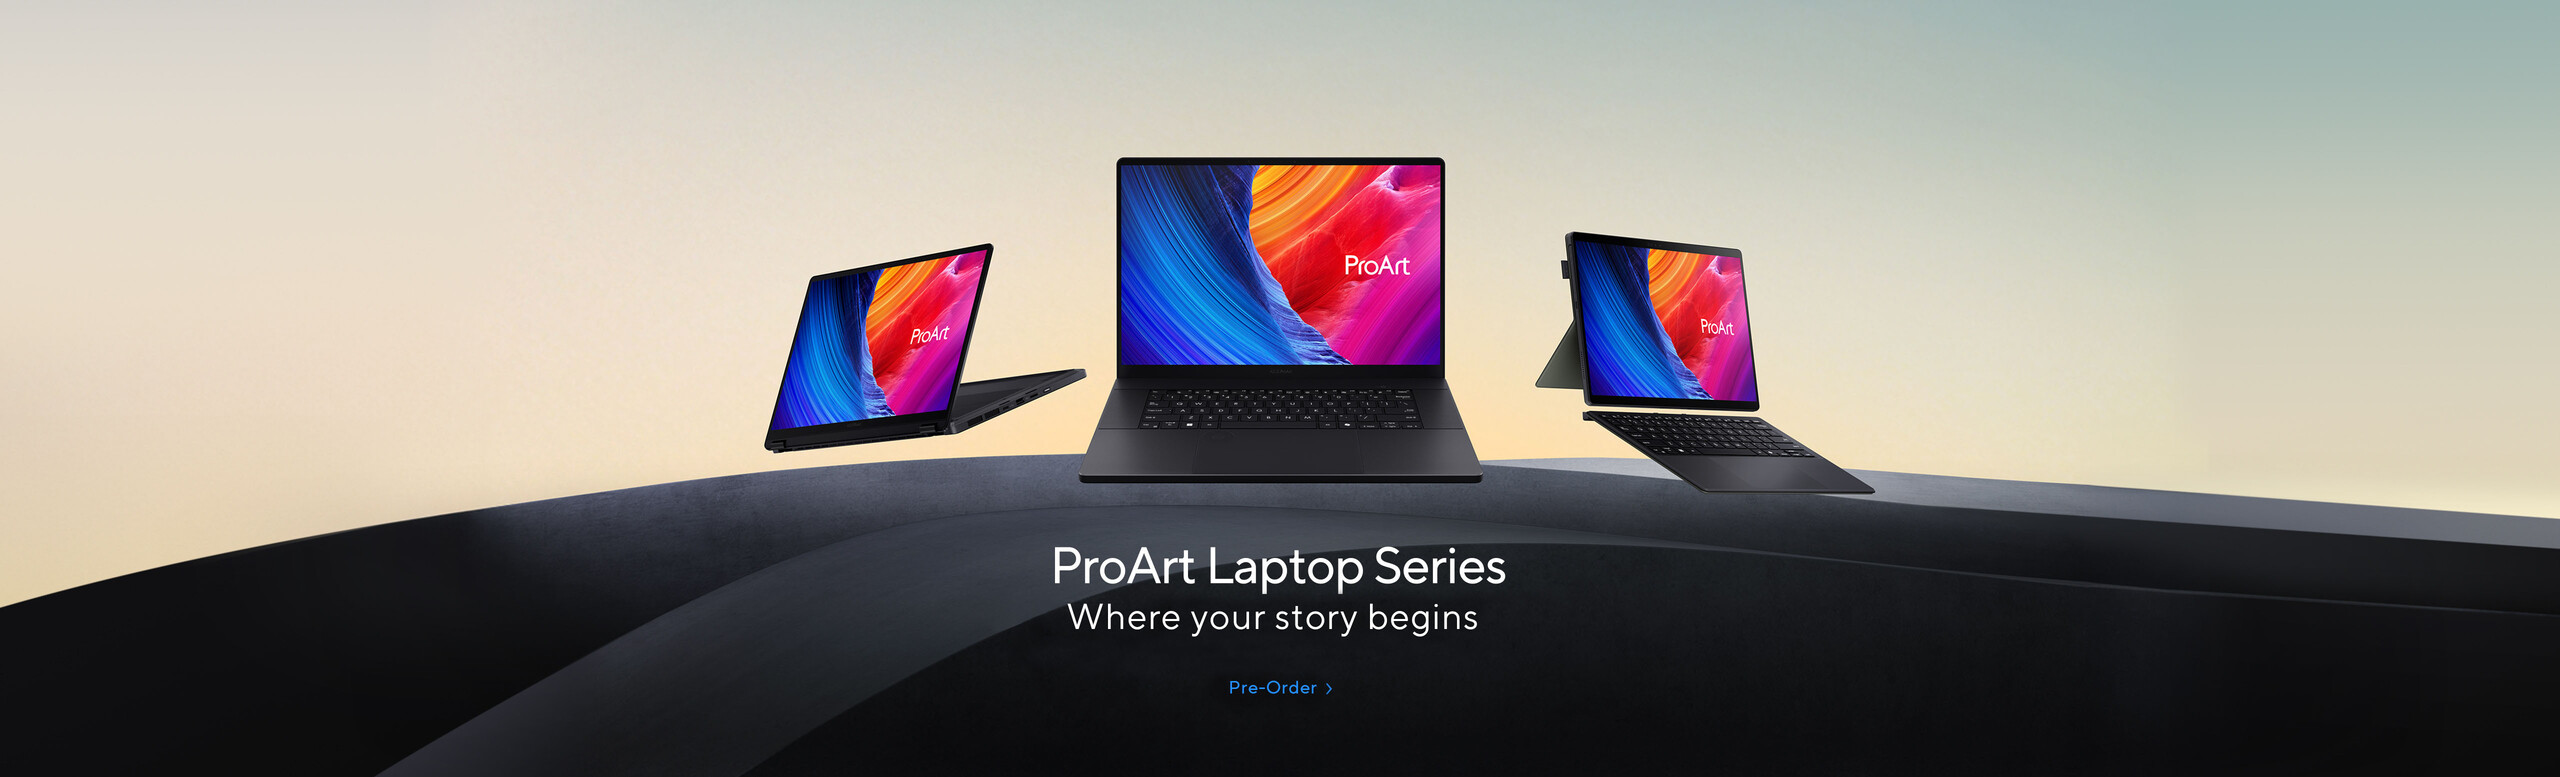 ProArt Laptop Series